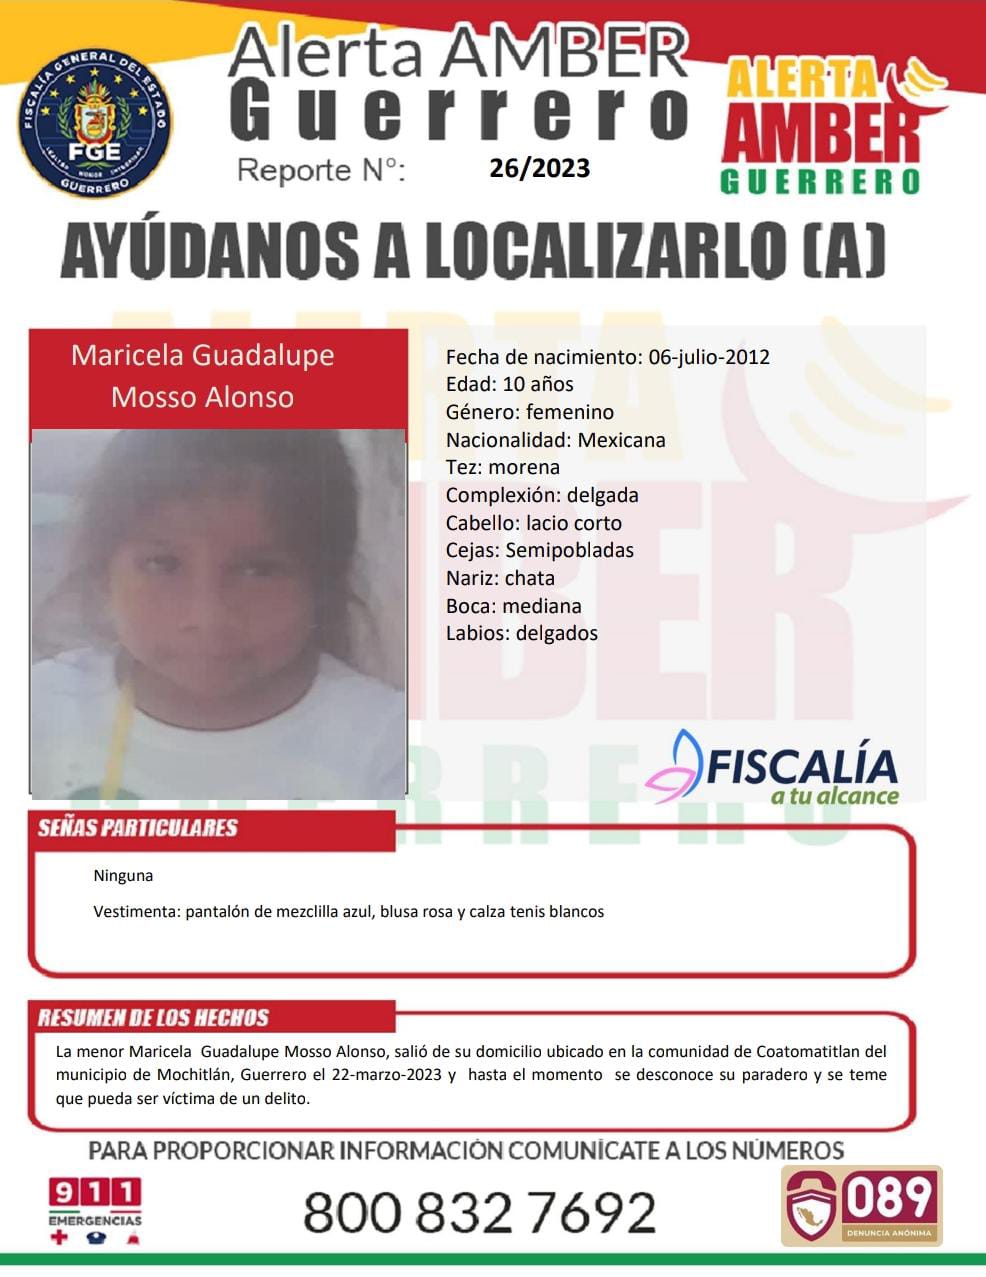 Fiscalía General Del Estado Solicita Su Colaboración Para Localizar A La Menor Maricela Guadalupe Mosso Alonso.